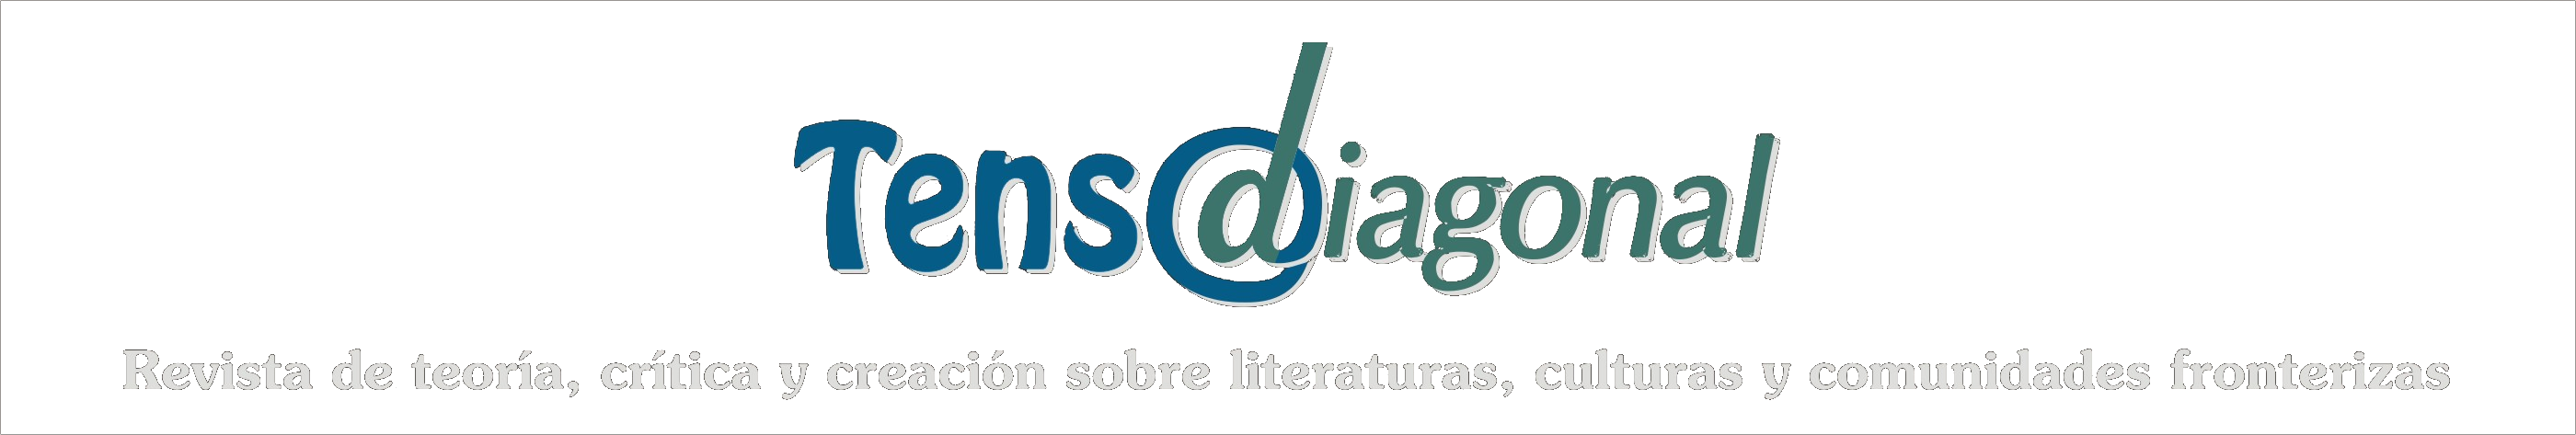 Tenso Diagonal. Revista de teoría, crítica y creación sobre literaturas, culturas y comunidades fronterizas